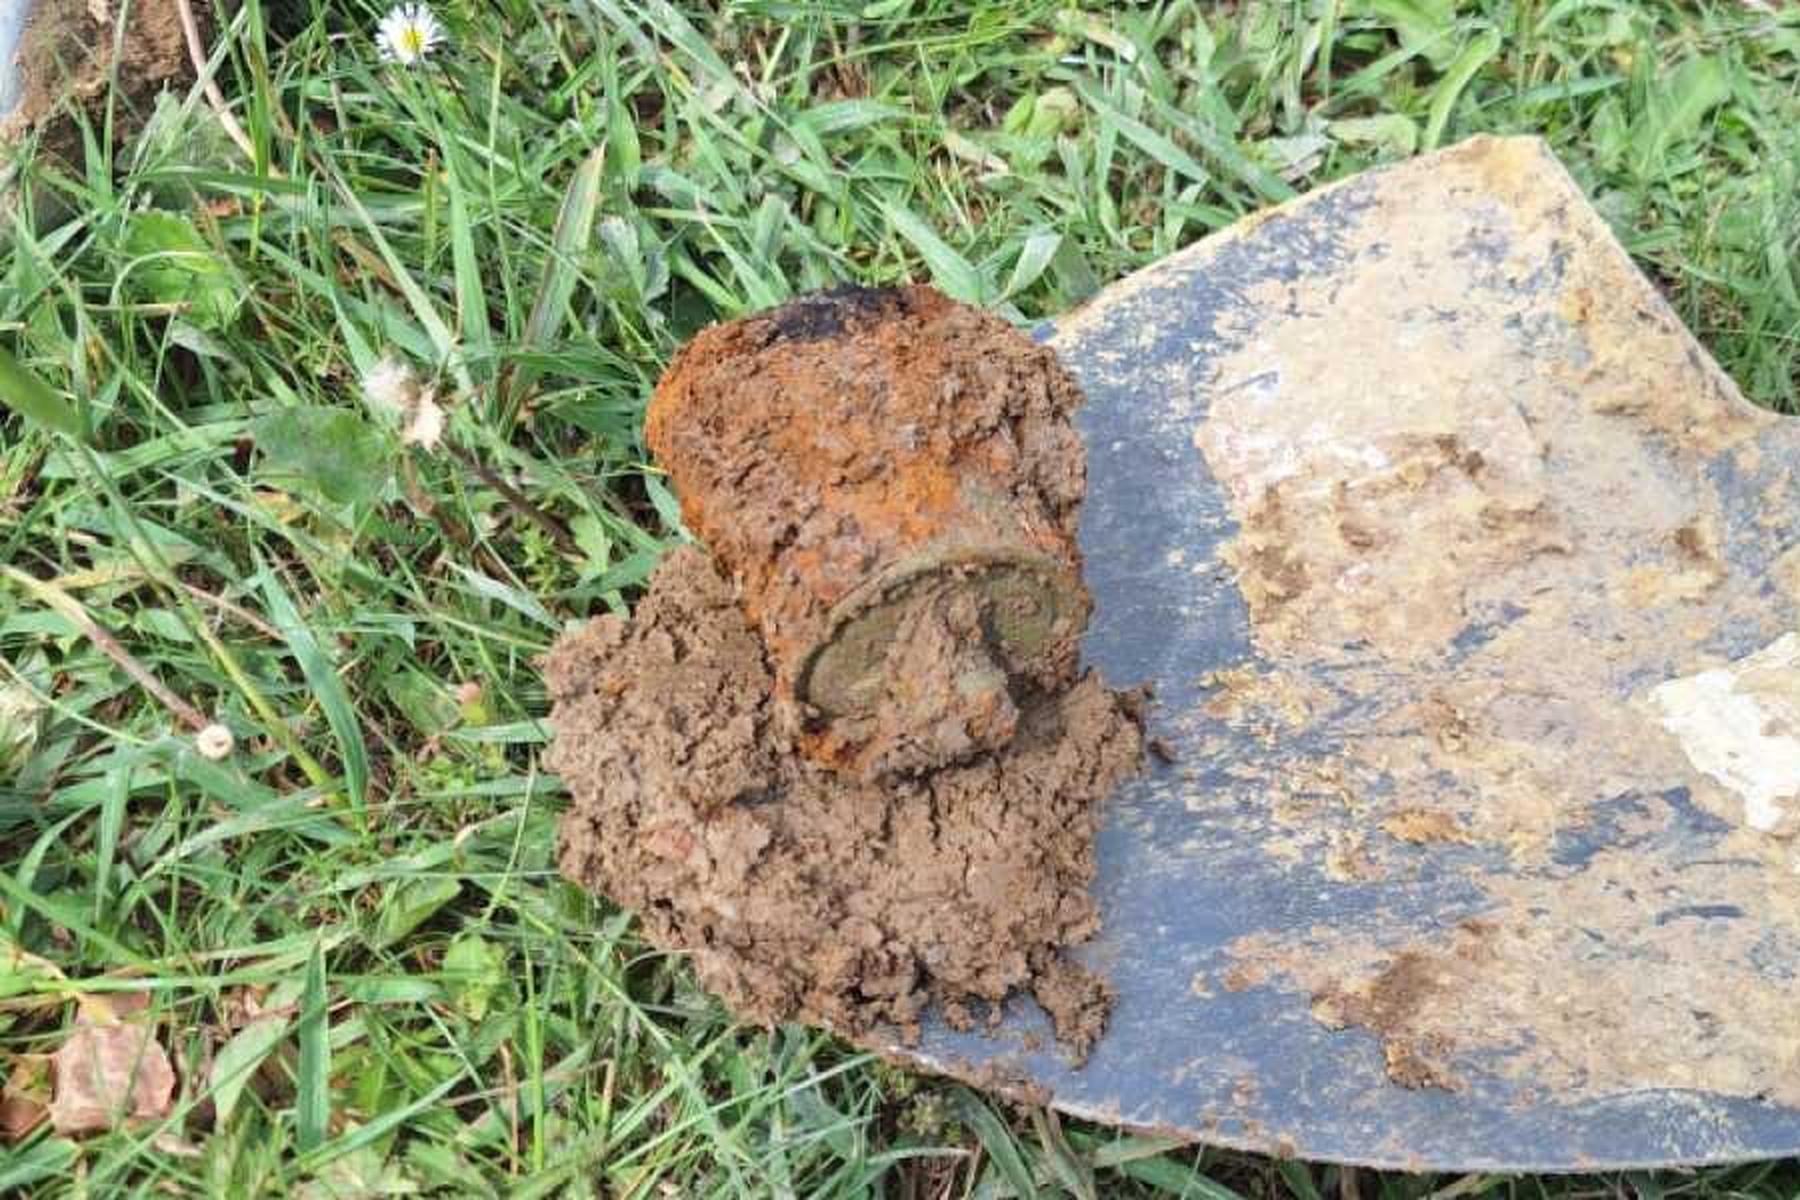 Niederleis: Granate und Toter bei Grabungsarbeiten in NÖ entdeckt